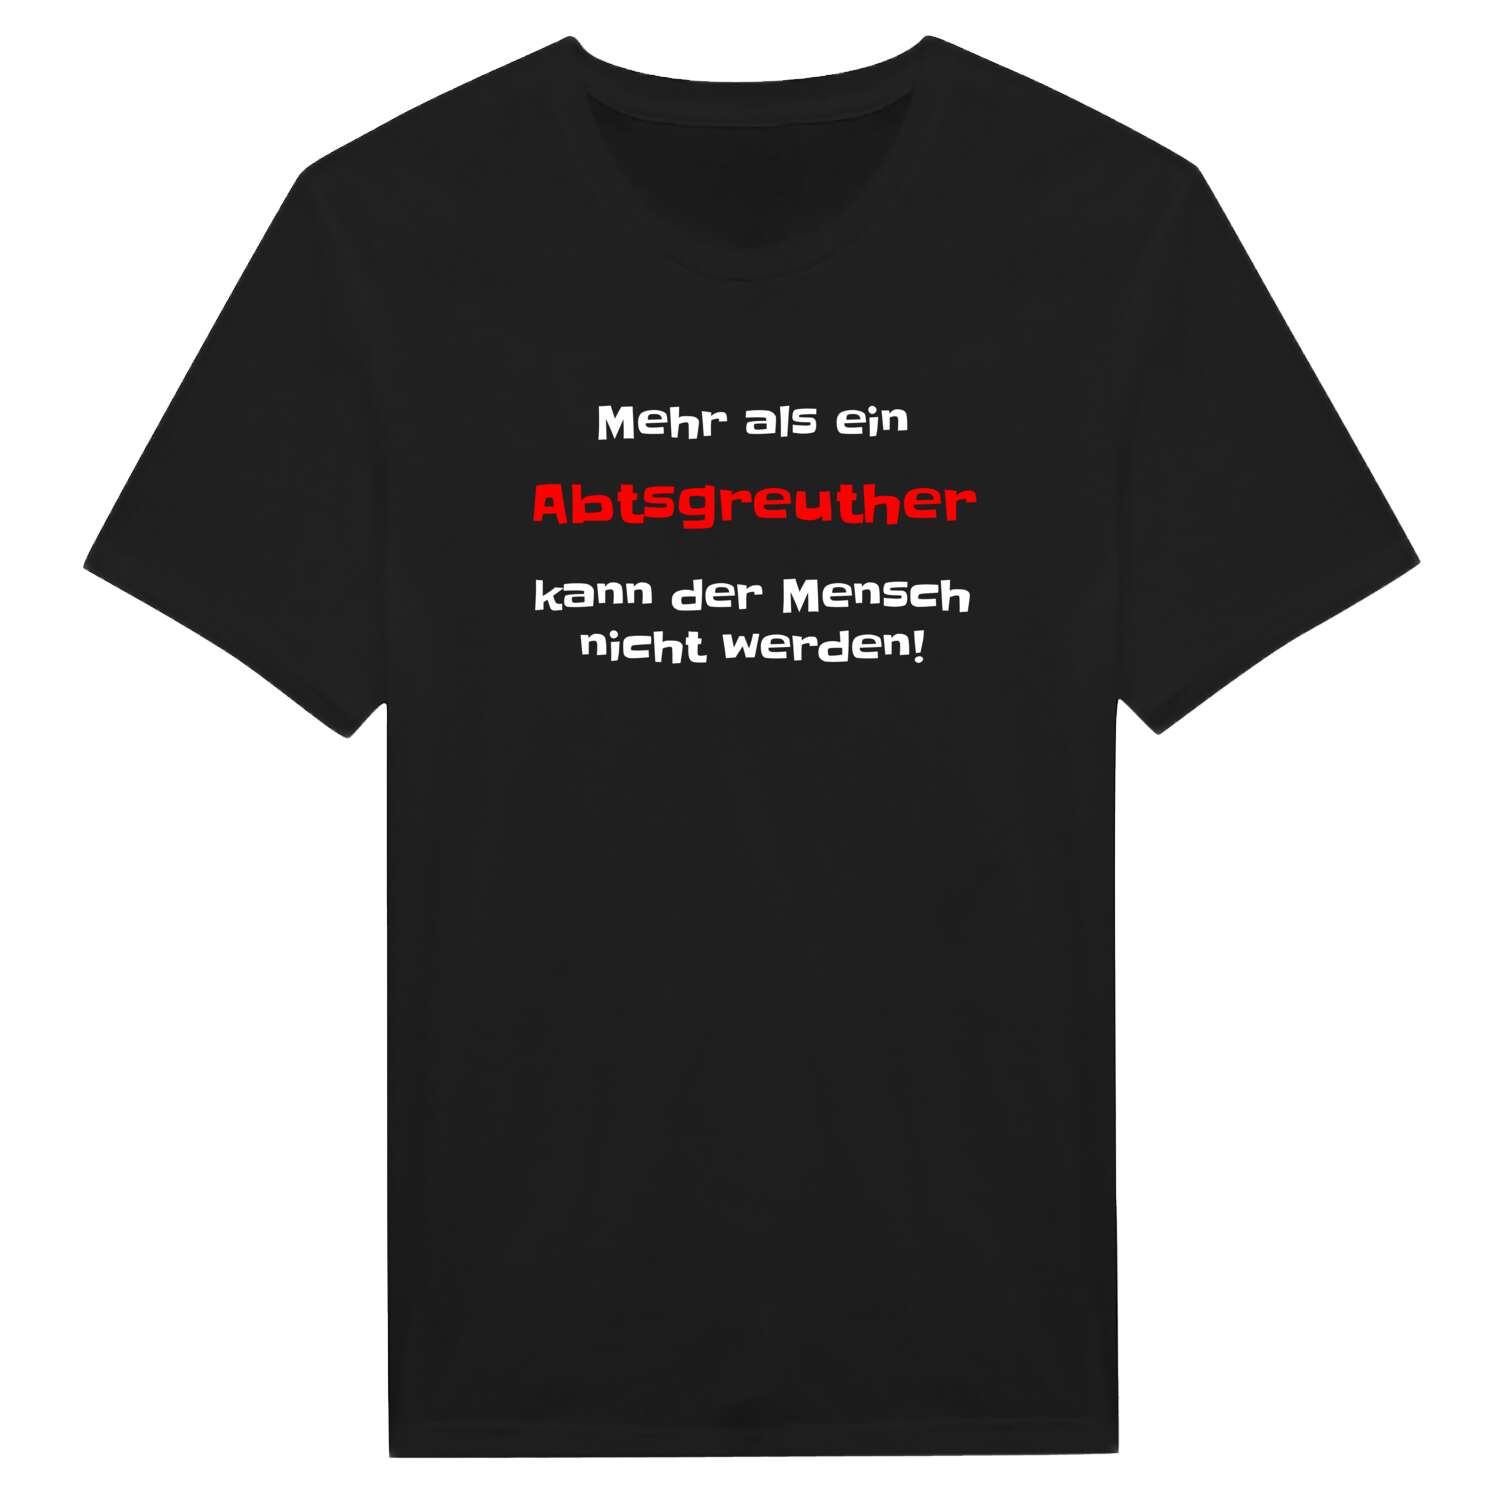 Abtsgreuth T-Shirt »Mehr als ein«